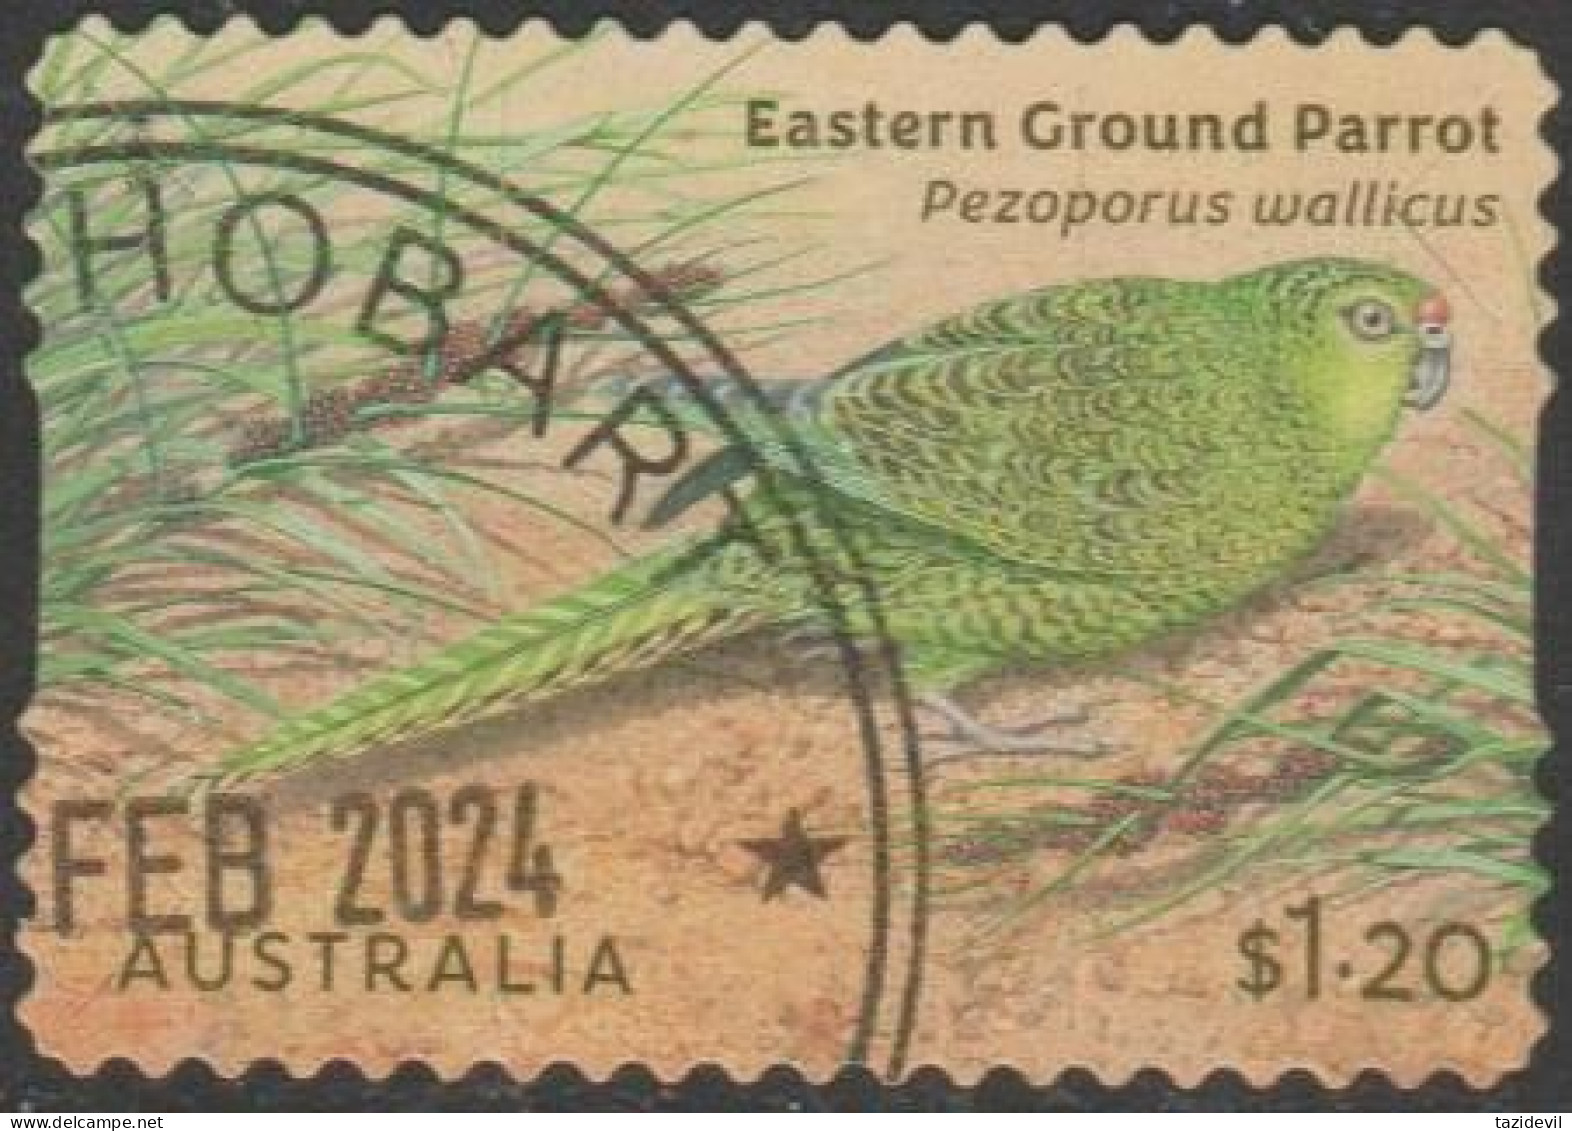 AUSTRALIA - DIE-CUT-USED 2024 $1.20 Australian Ground Parrots - Eastern Ground Parrot - Gebraucht